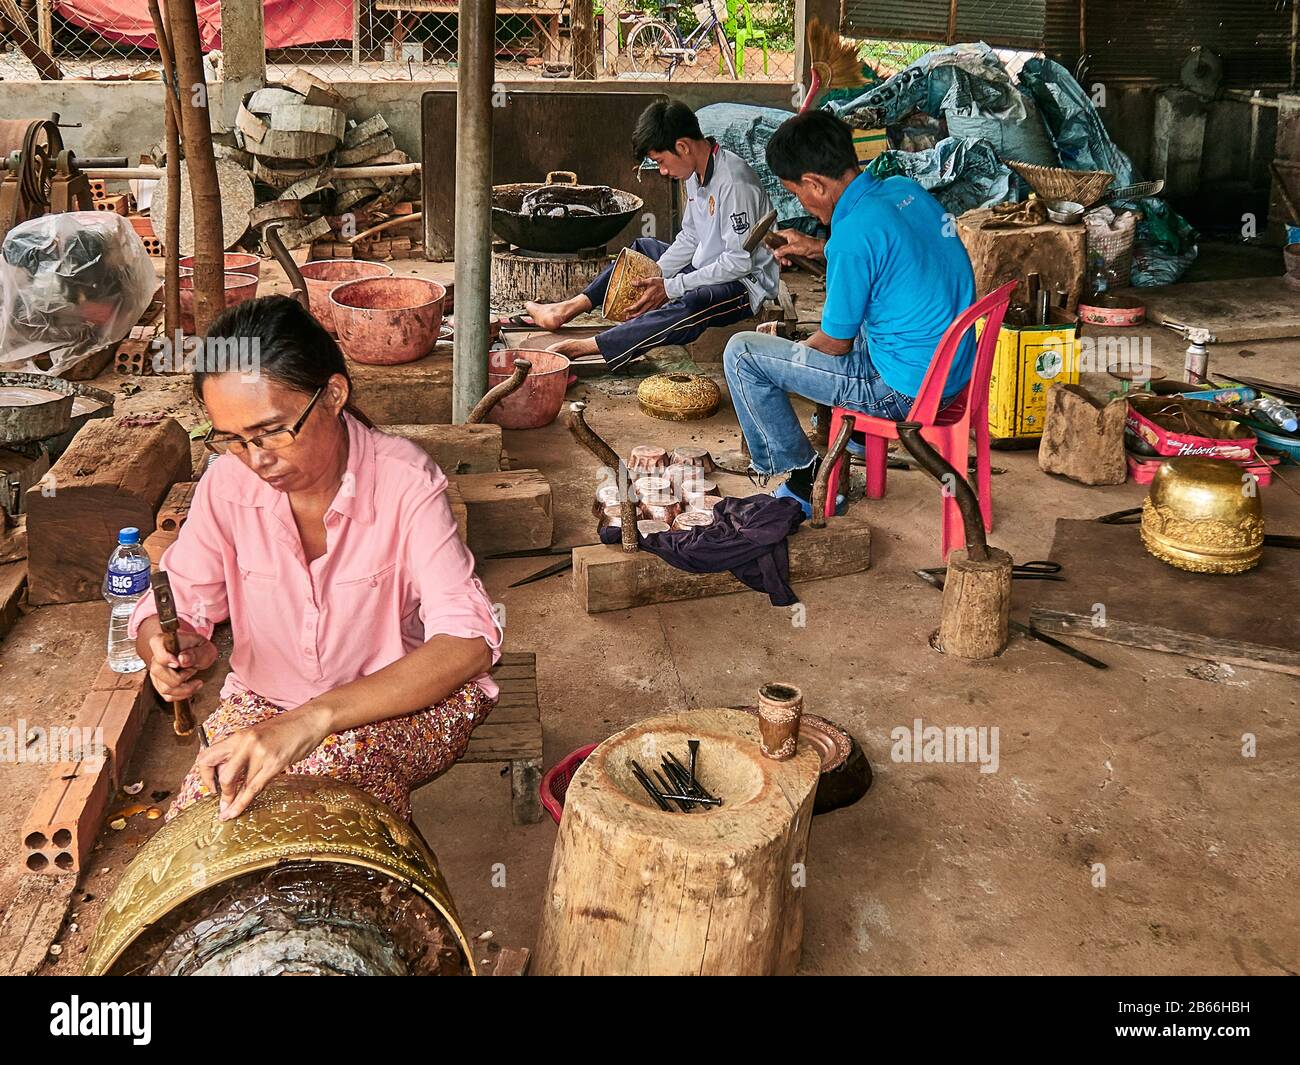 Kambodscha, Siam Reap. Handwerker bei der Arbeit im Dorf Koh Chen, spezialisiert auf Kupferkessel, um ein schönes Design zu schaffen Stockfoto